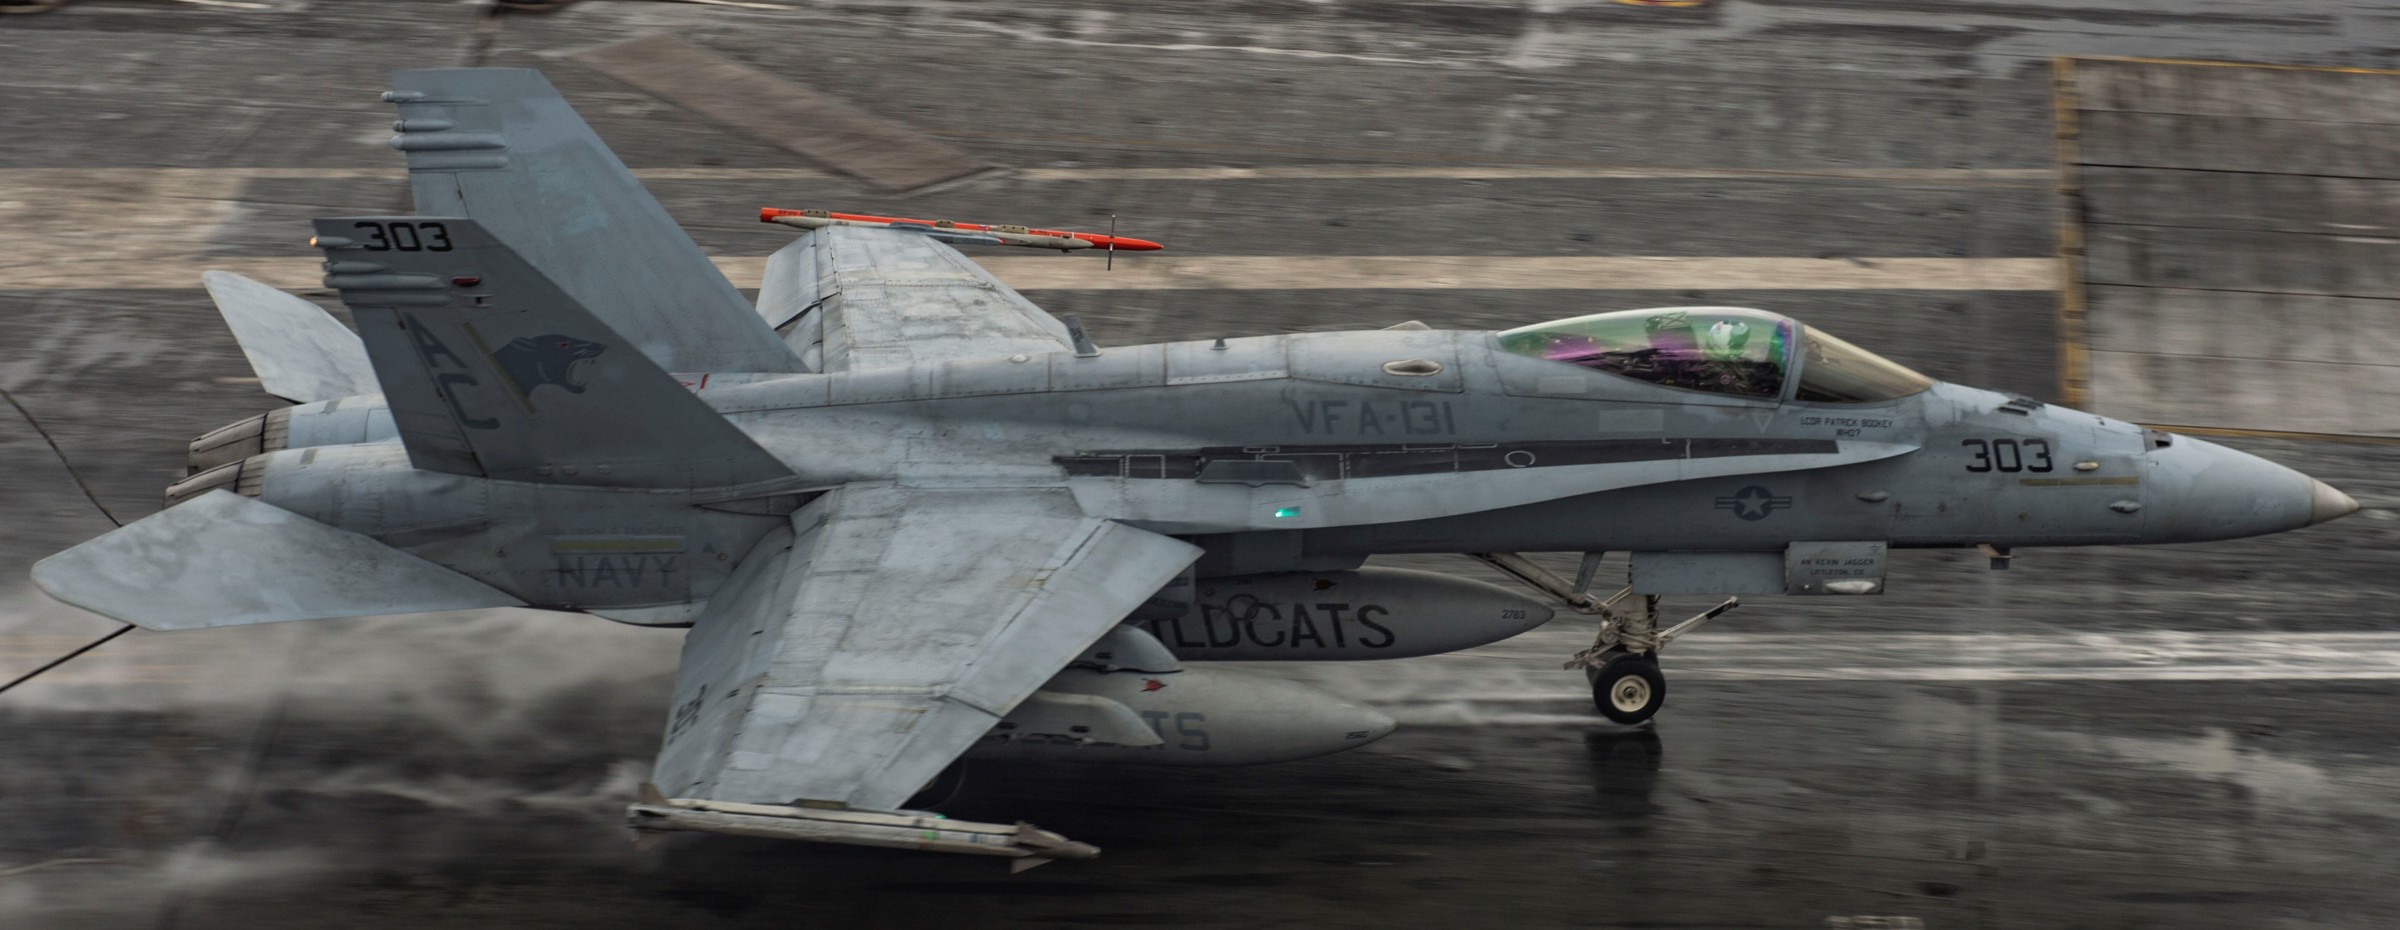 vfa-131 wildcats strike fighter squadron f/a-18c hornet cvw-3 uss dwight d. eisenhower cvn-69 2016 37